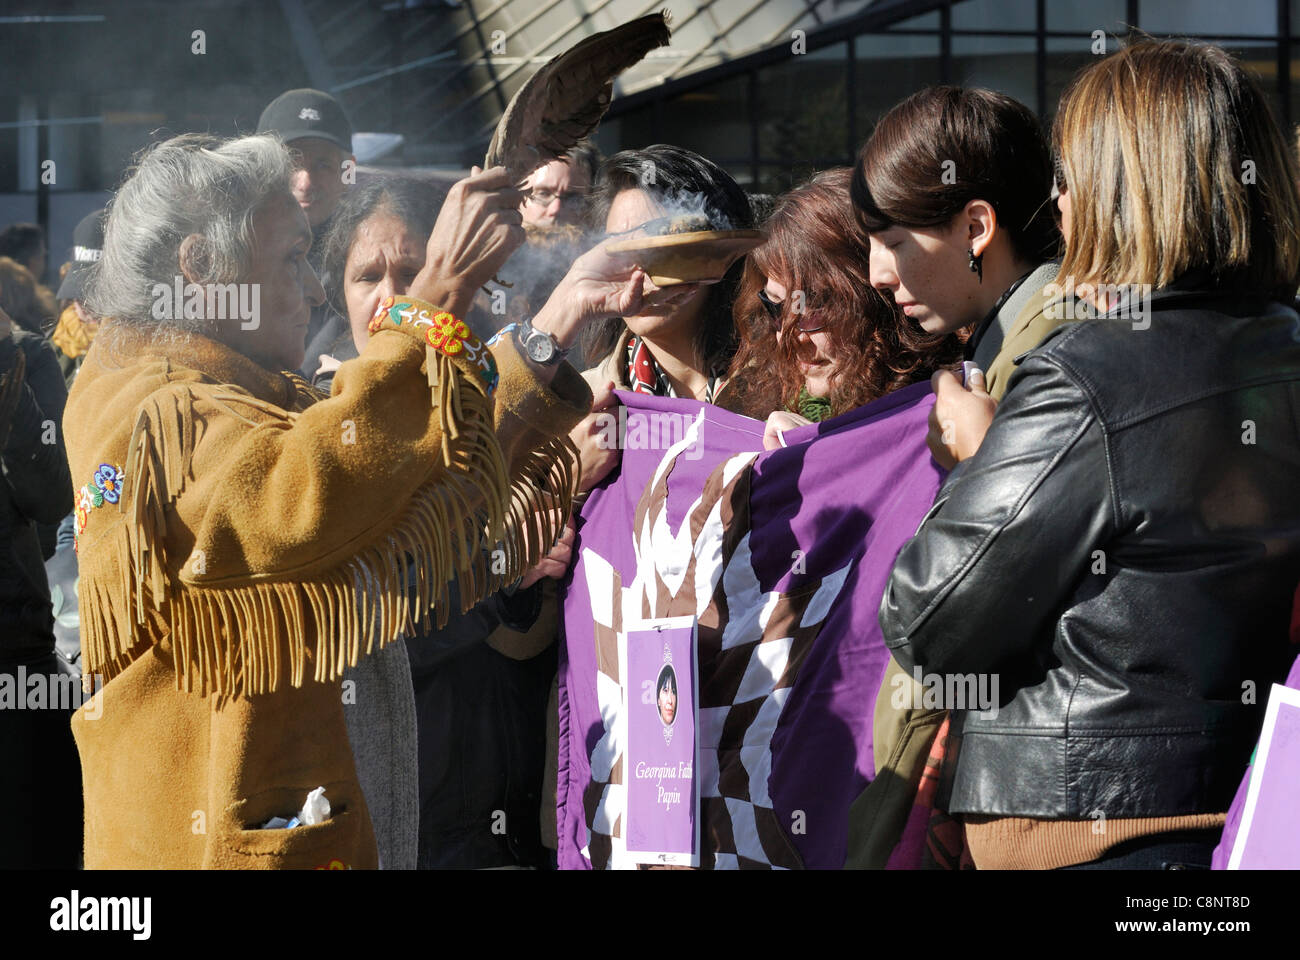 Las primeras naciones elder realizar una ceremonia de borrones, espiritual, ritual de limpieza y purificación del espíritu. Foto de stock